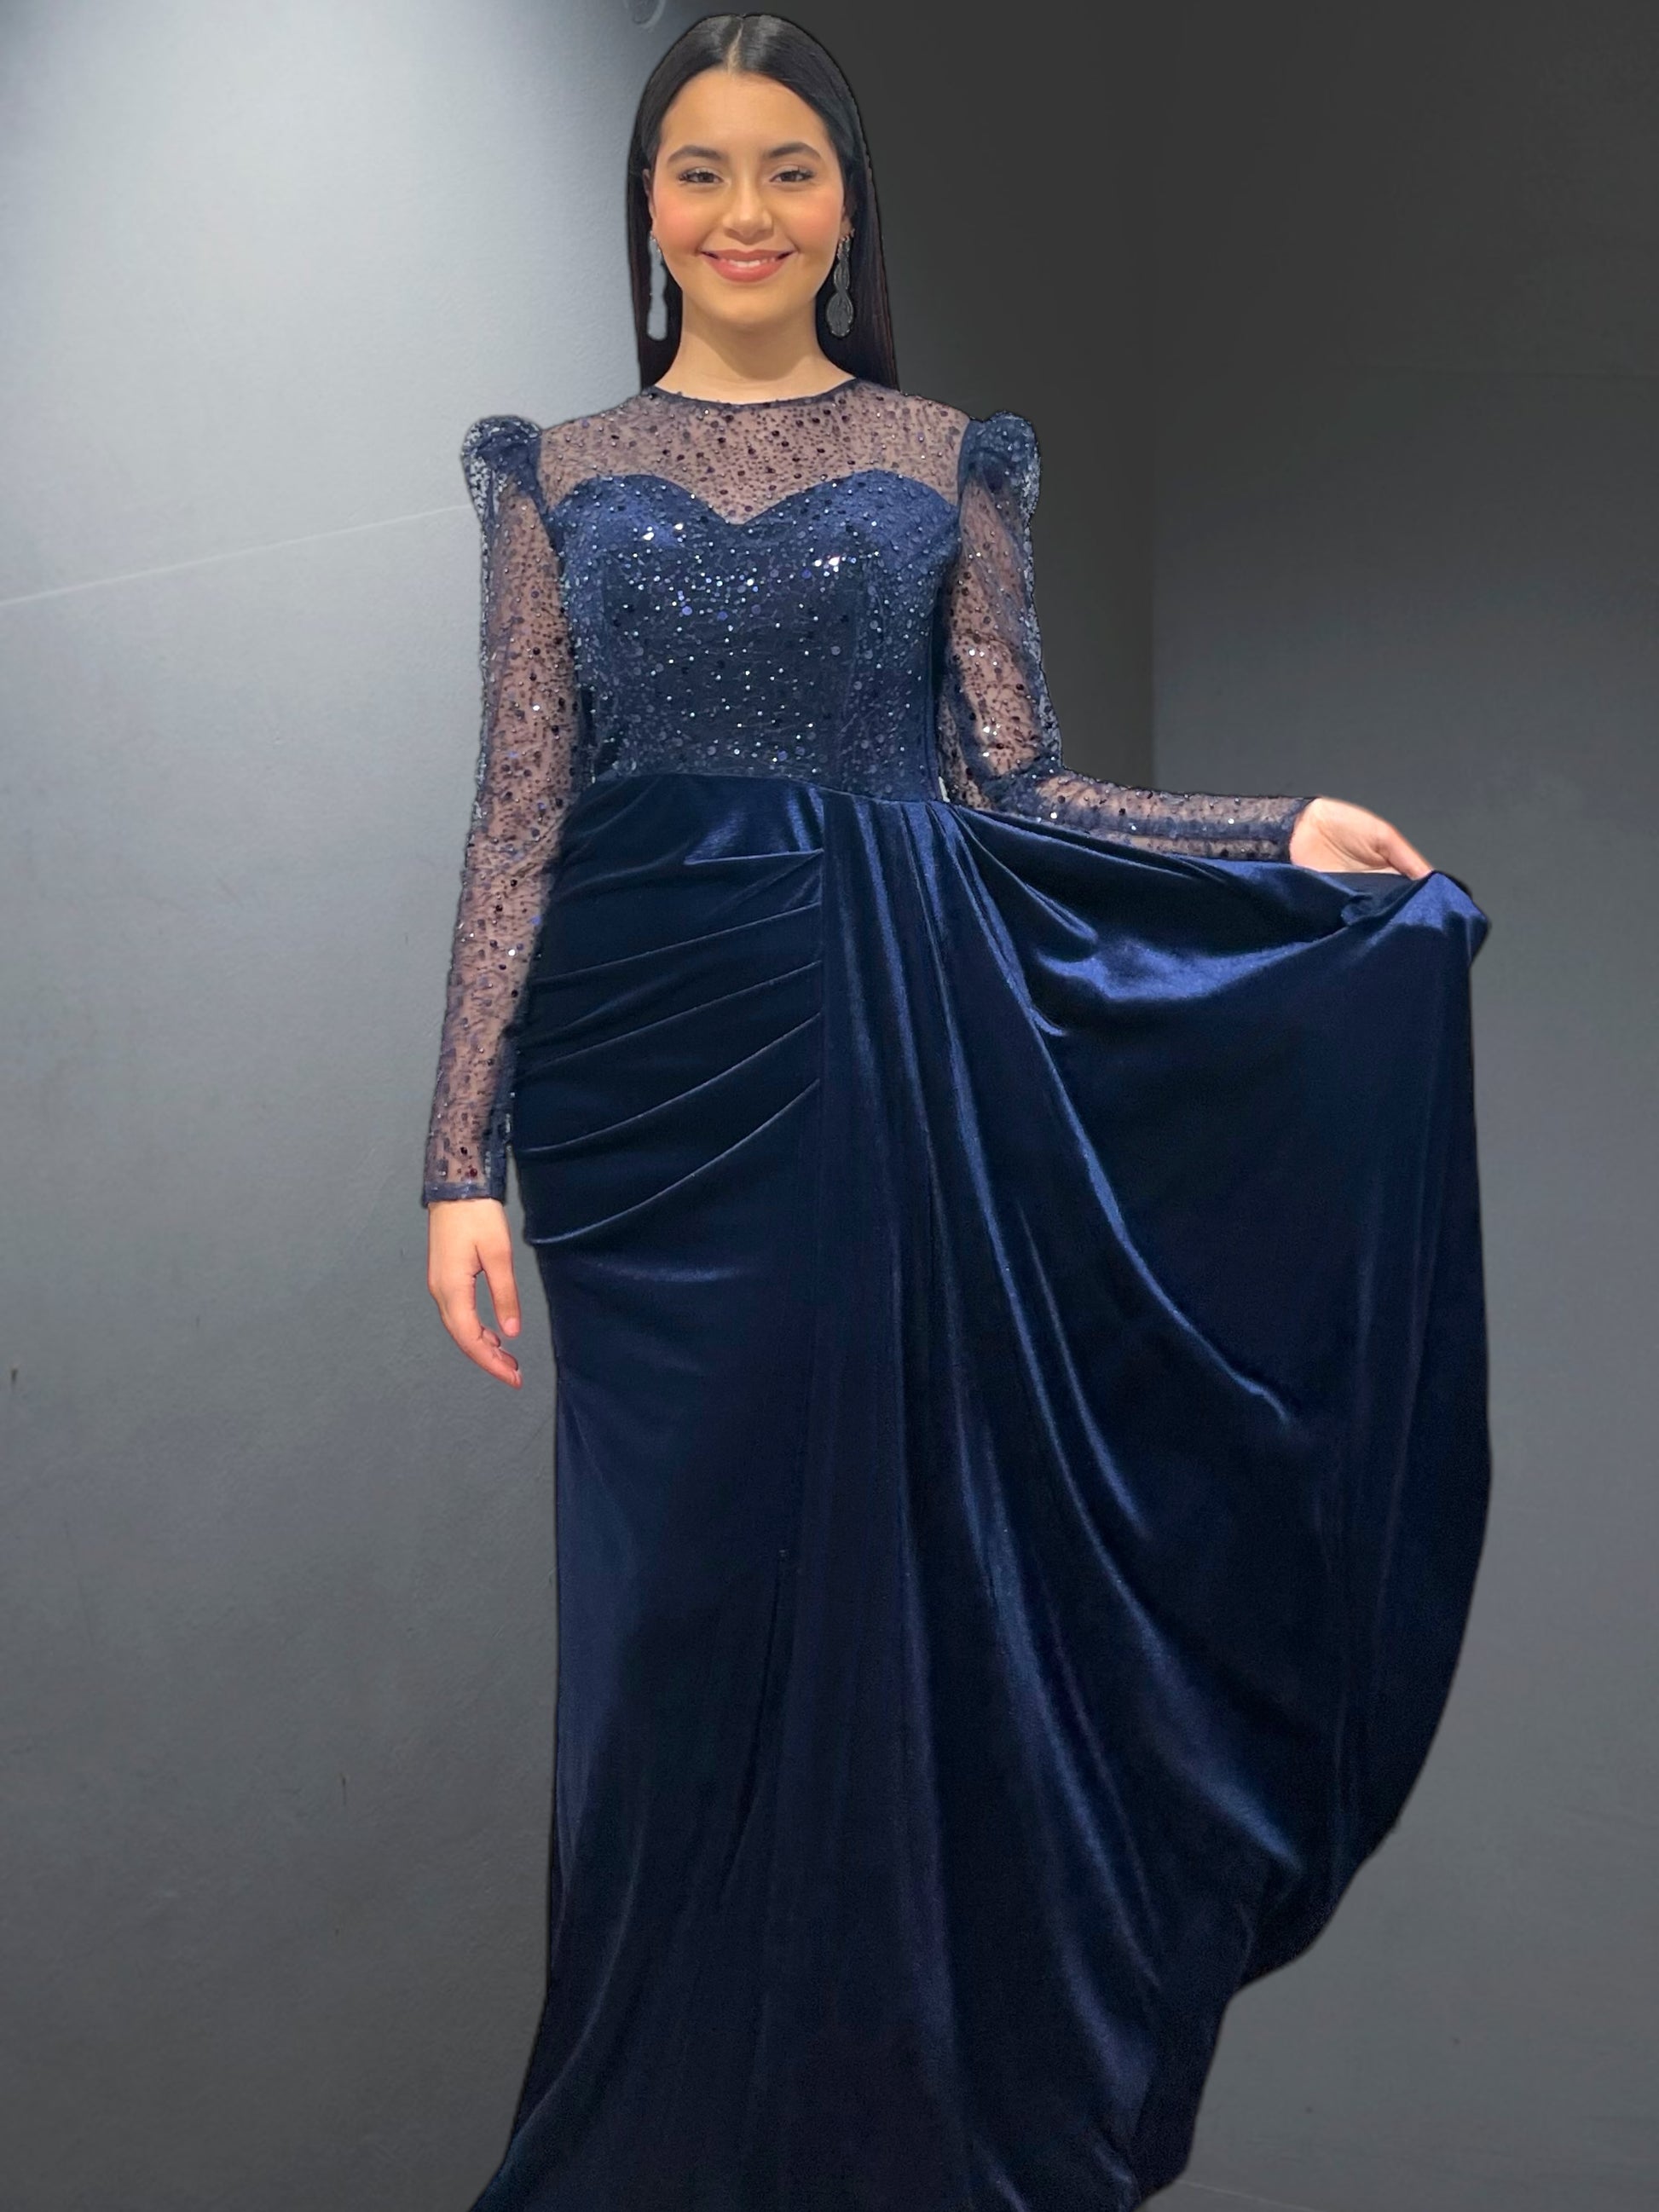 La robe de soirée "Modèle Anvers" d'Amir Couture - AmirCouture 